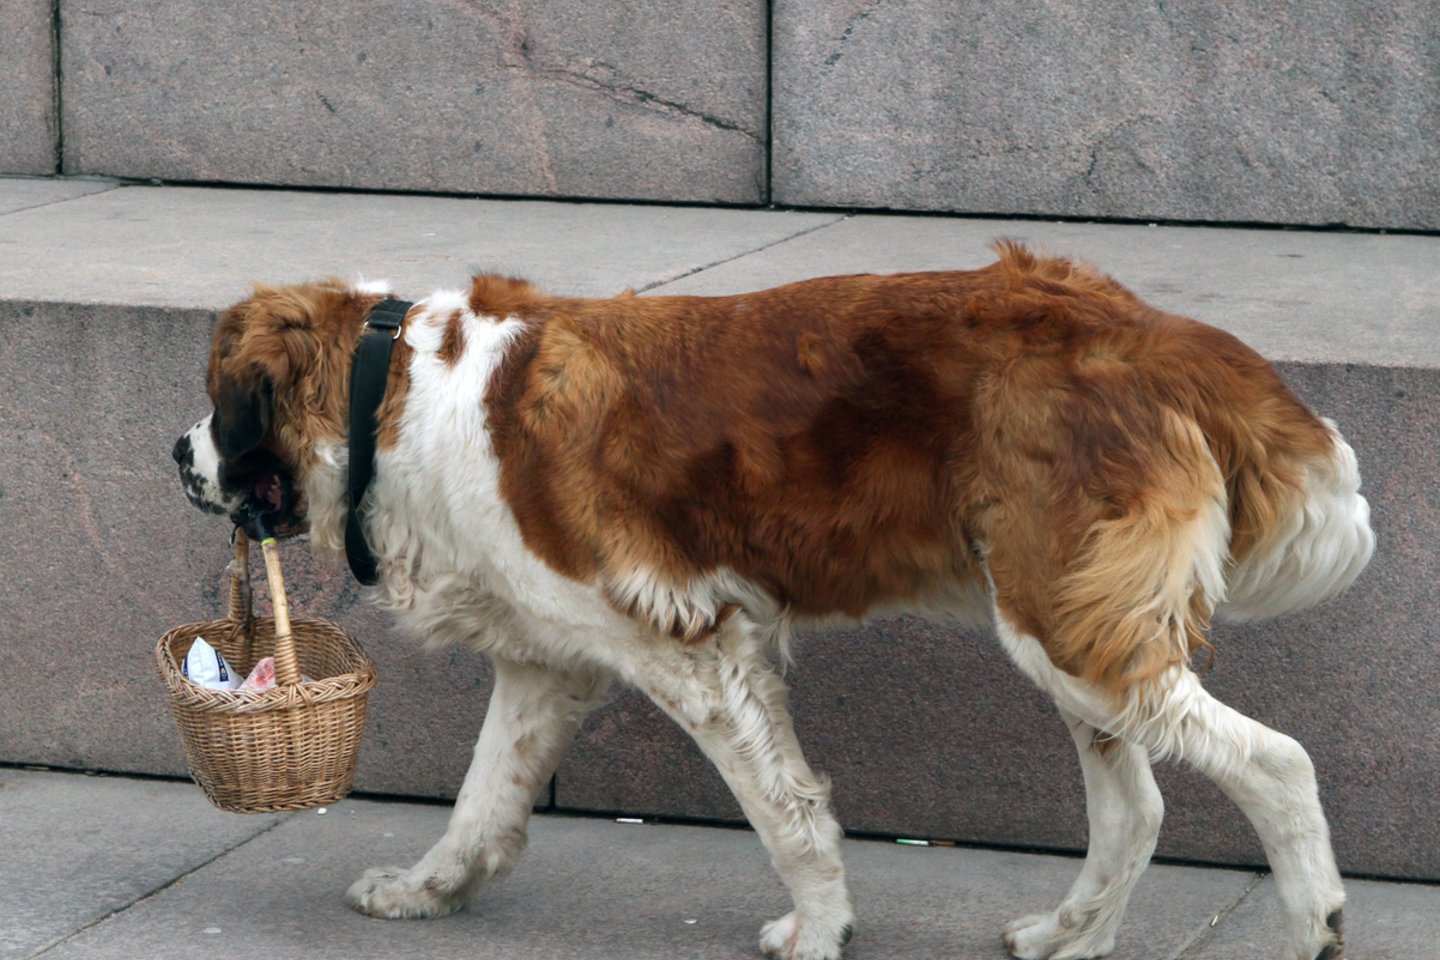  Senbernarai yra romūs ir draugiški šunys, todėl keista kodėl tokios veislės šuo užpuolė ir apkandžiojo praeivę. <br> M.Patašiaus asociatyvi nuotrauka